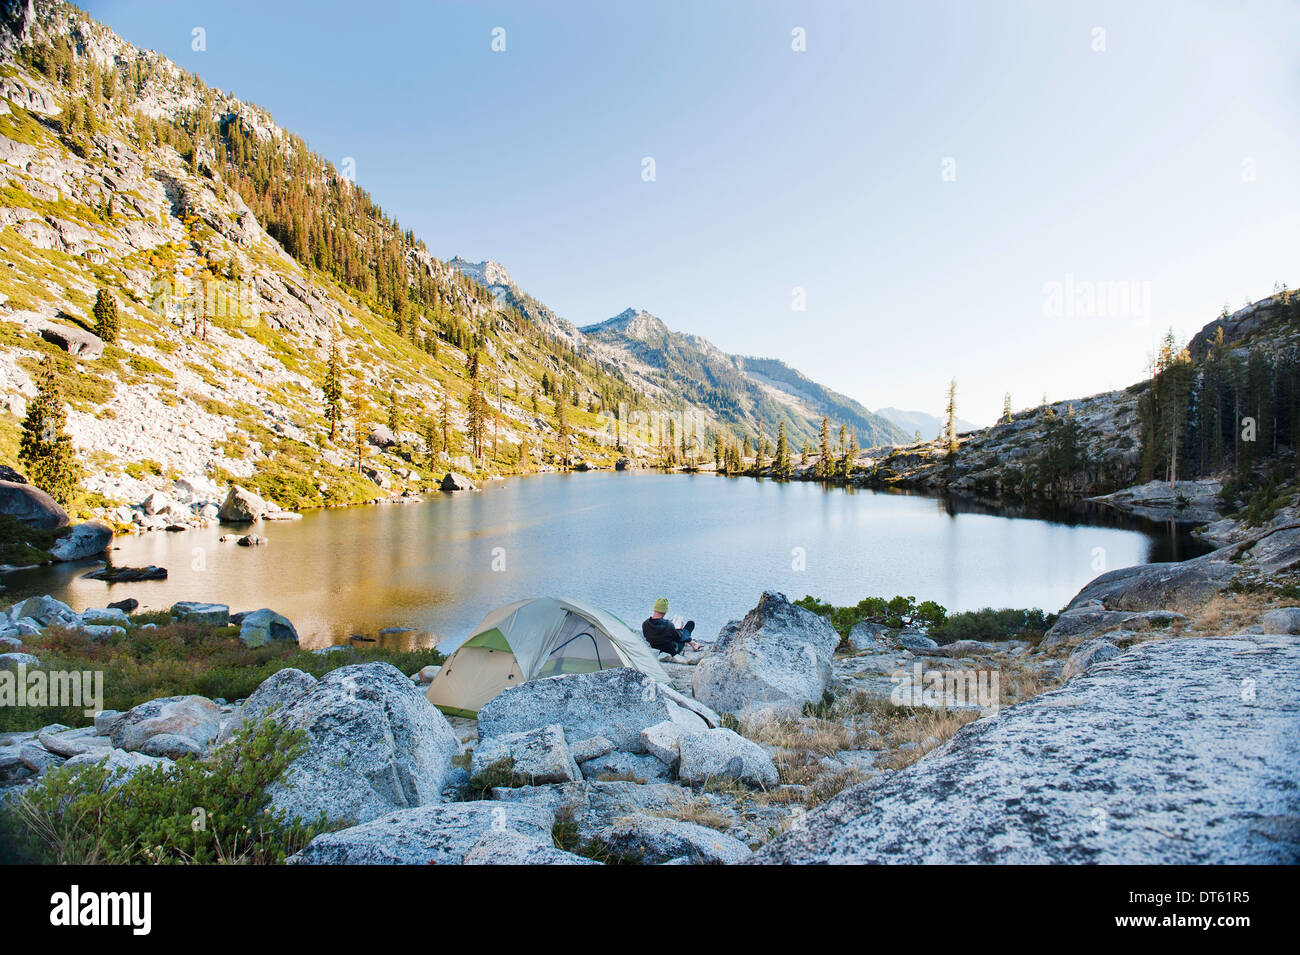 Young man camping at remote lake, Trinity Alps, California, USA Stock Photo